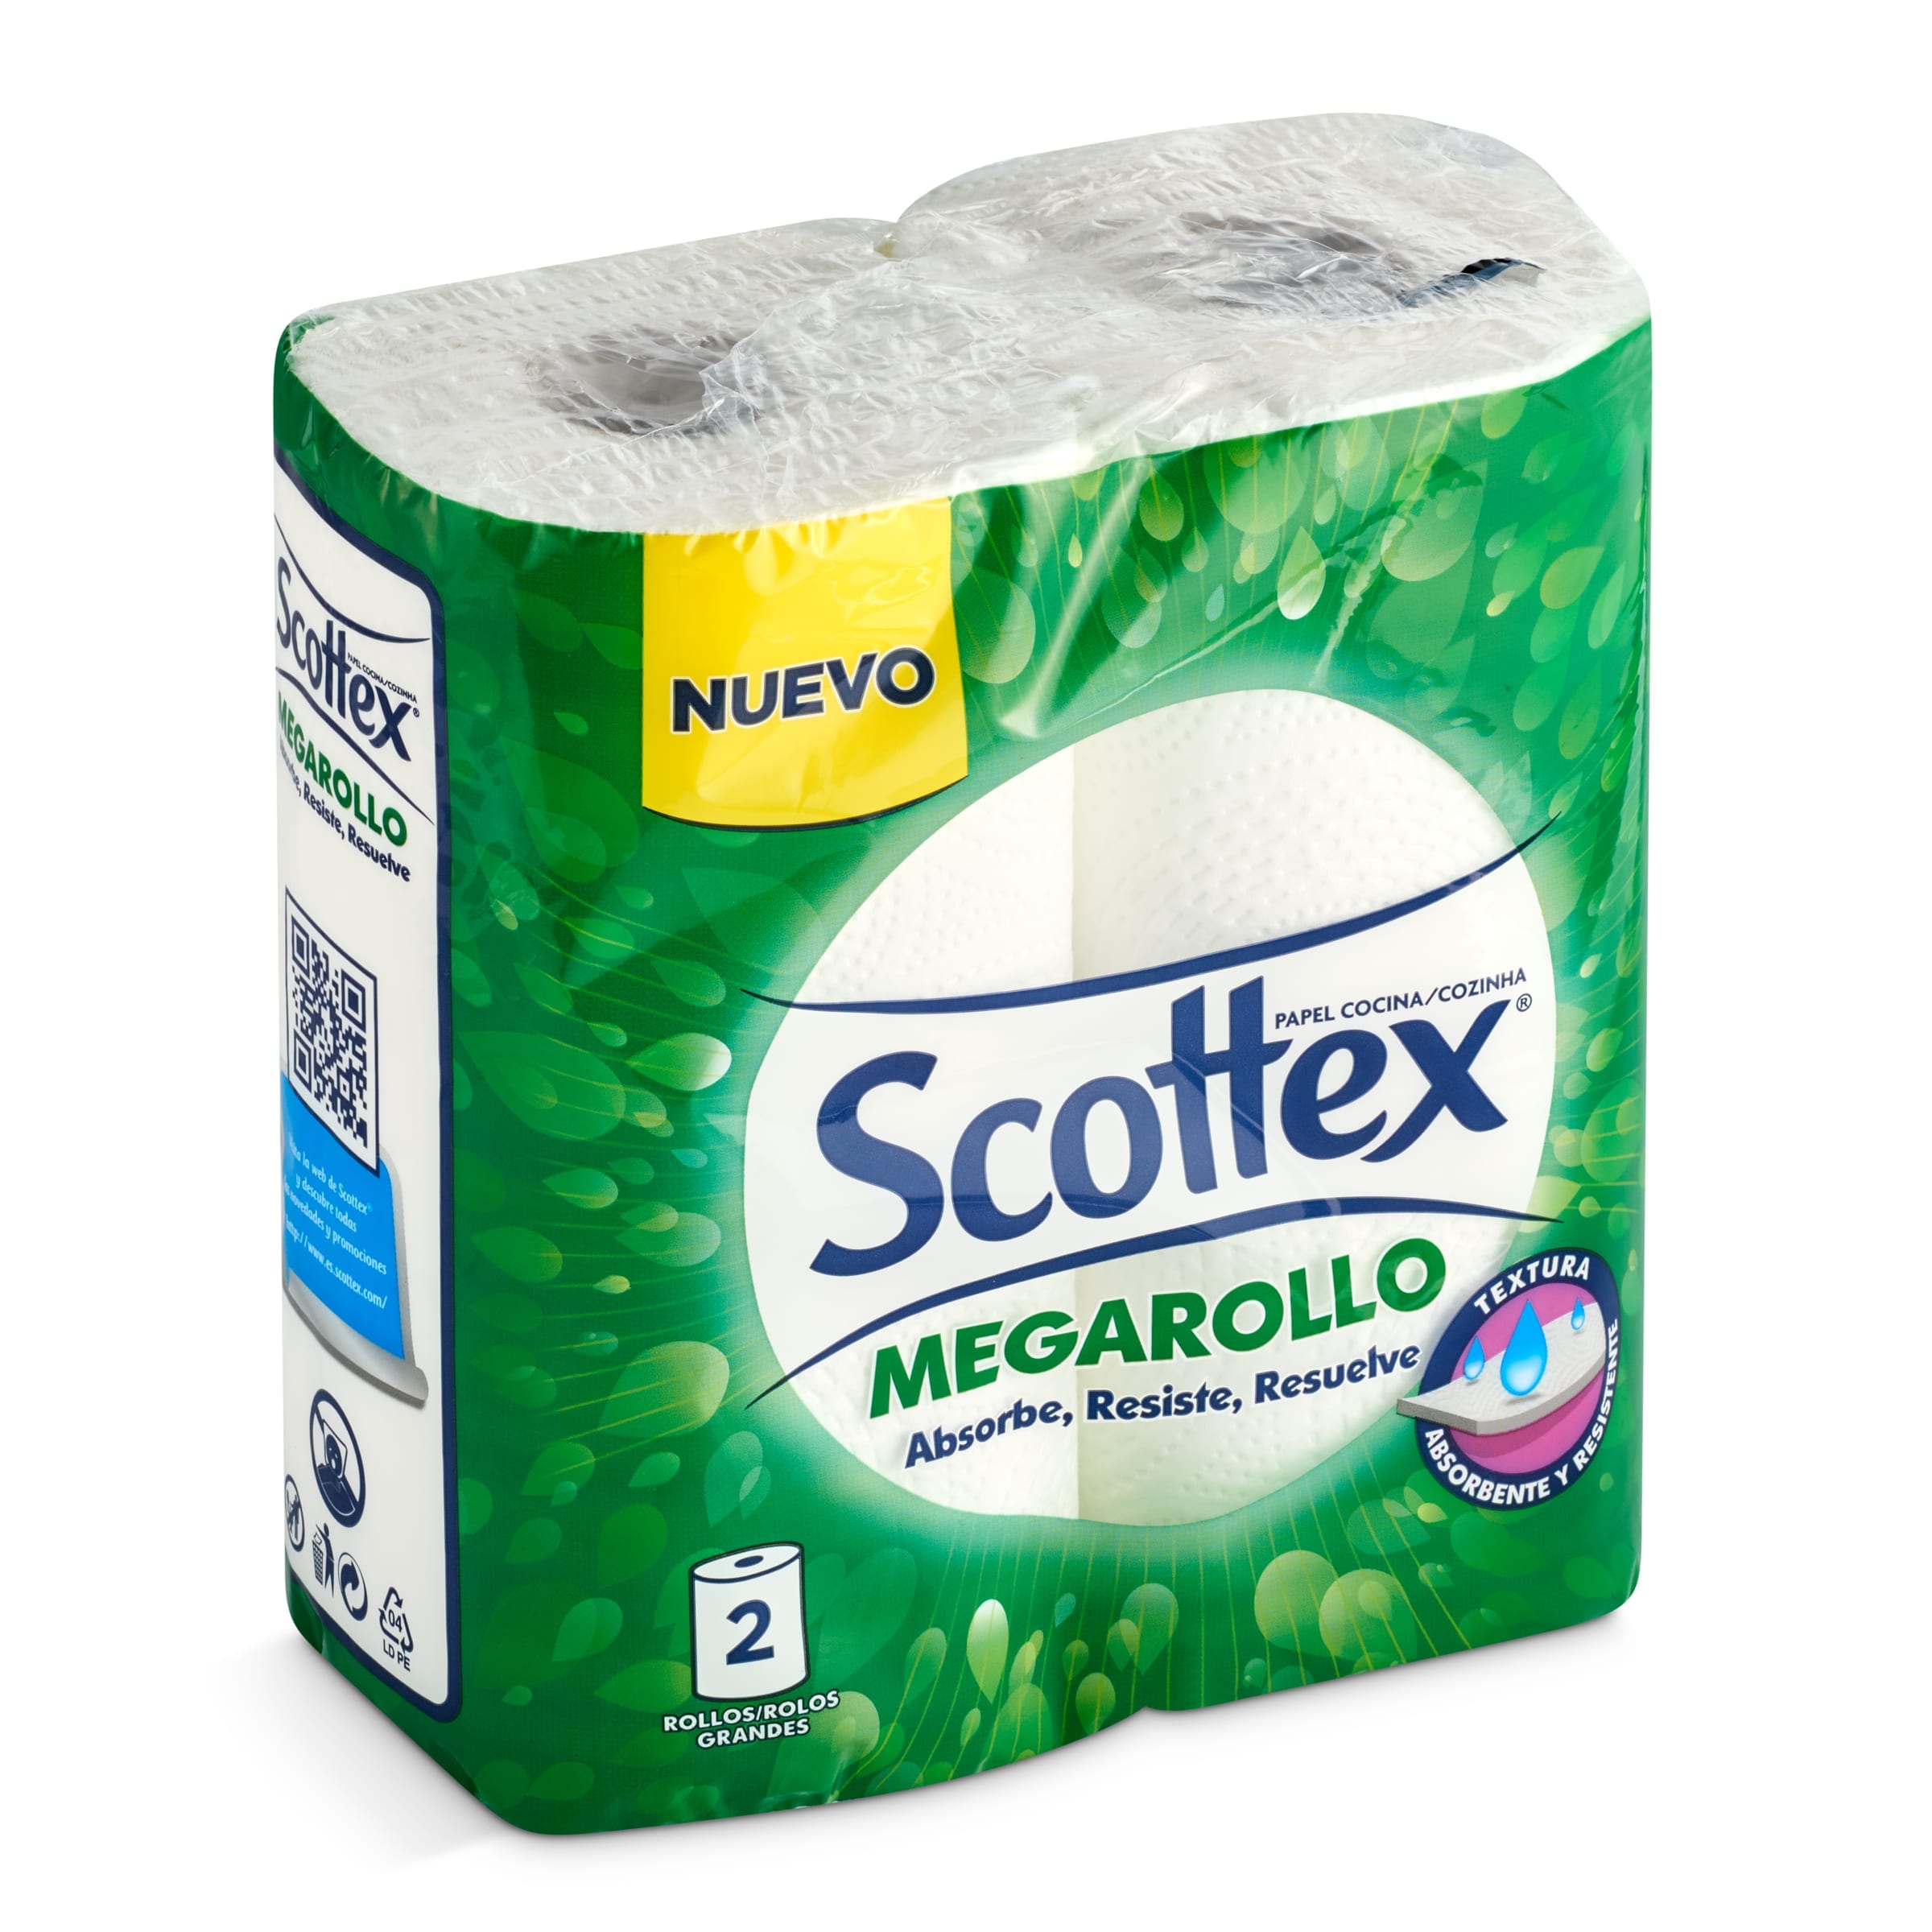 Papel higiénico original Scottex bolsa 16 unidades - Supermercados DIA